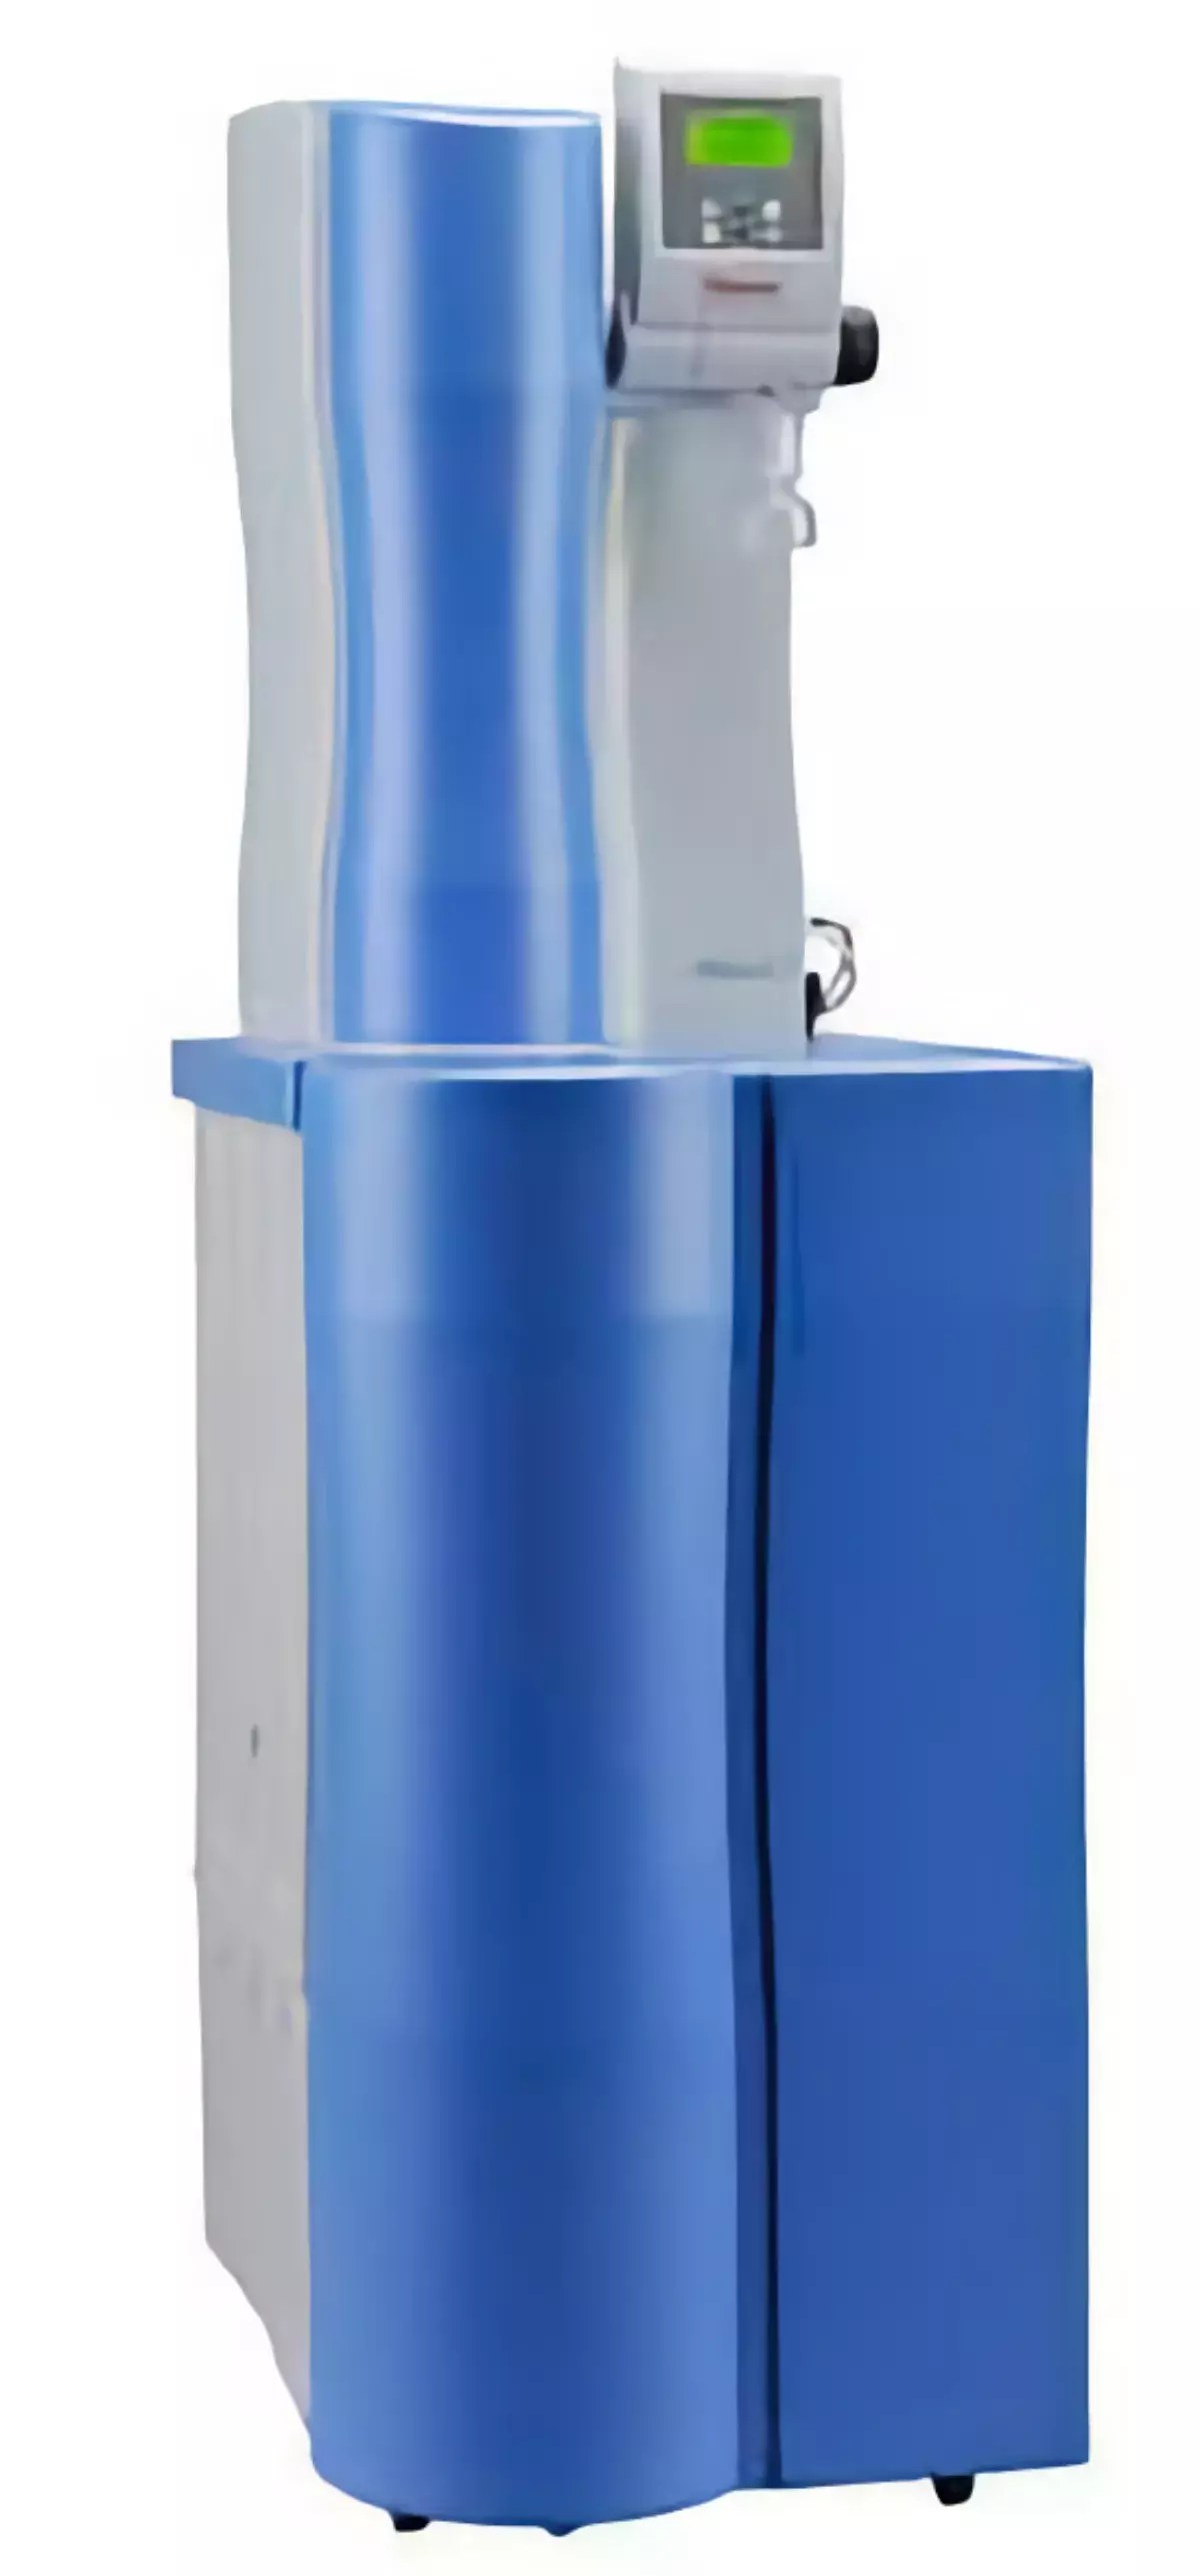 Система очистки воды Barnstead LabTower RO (тип III)